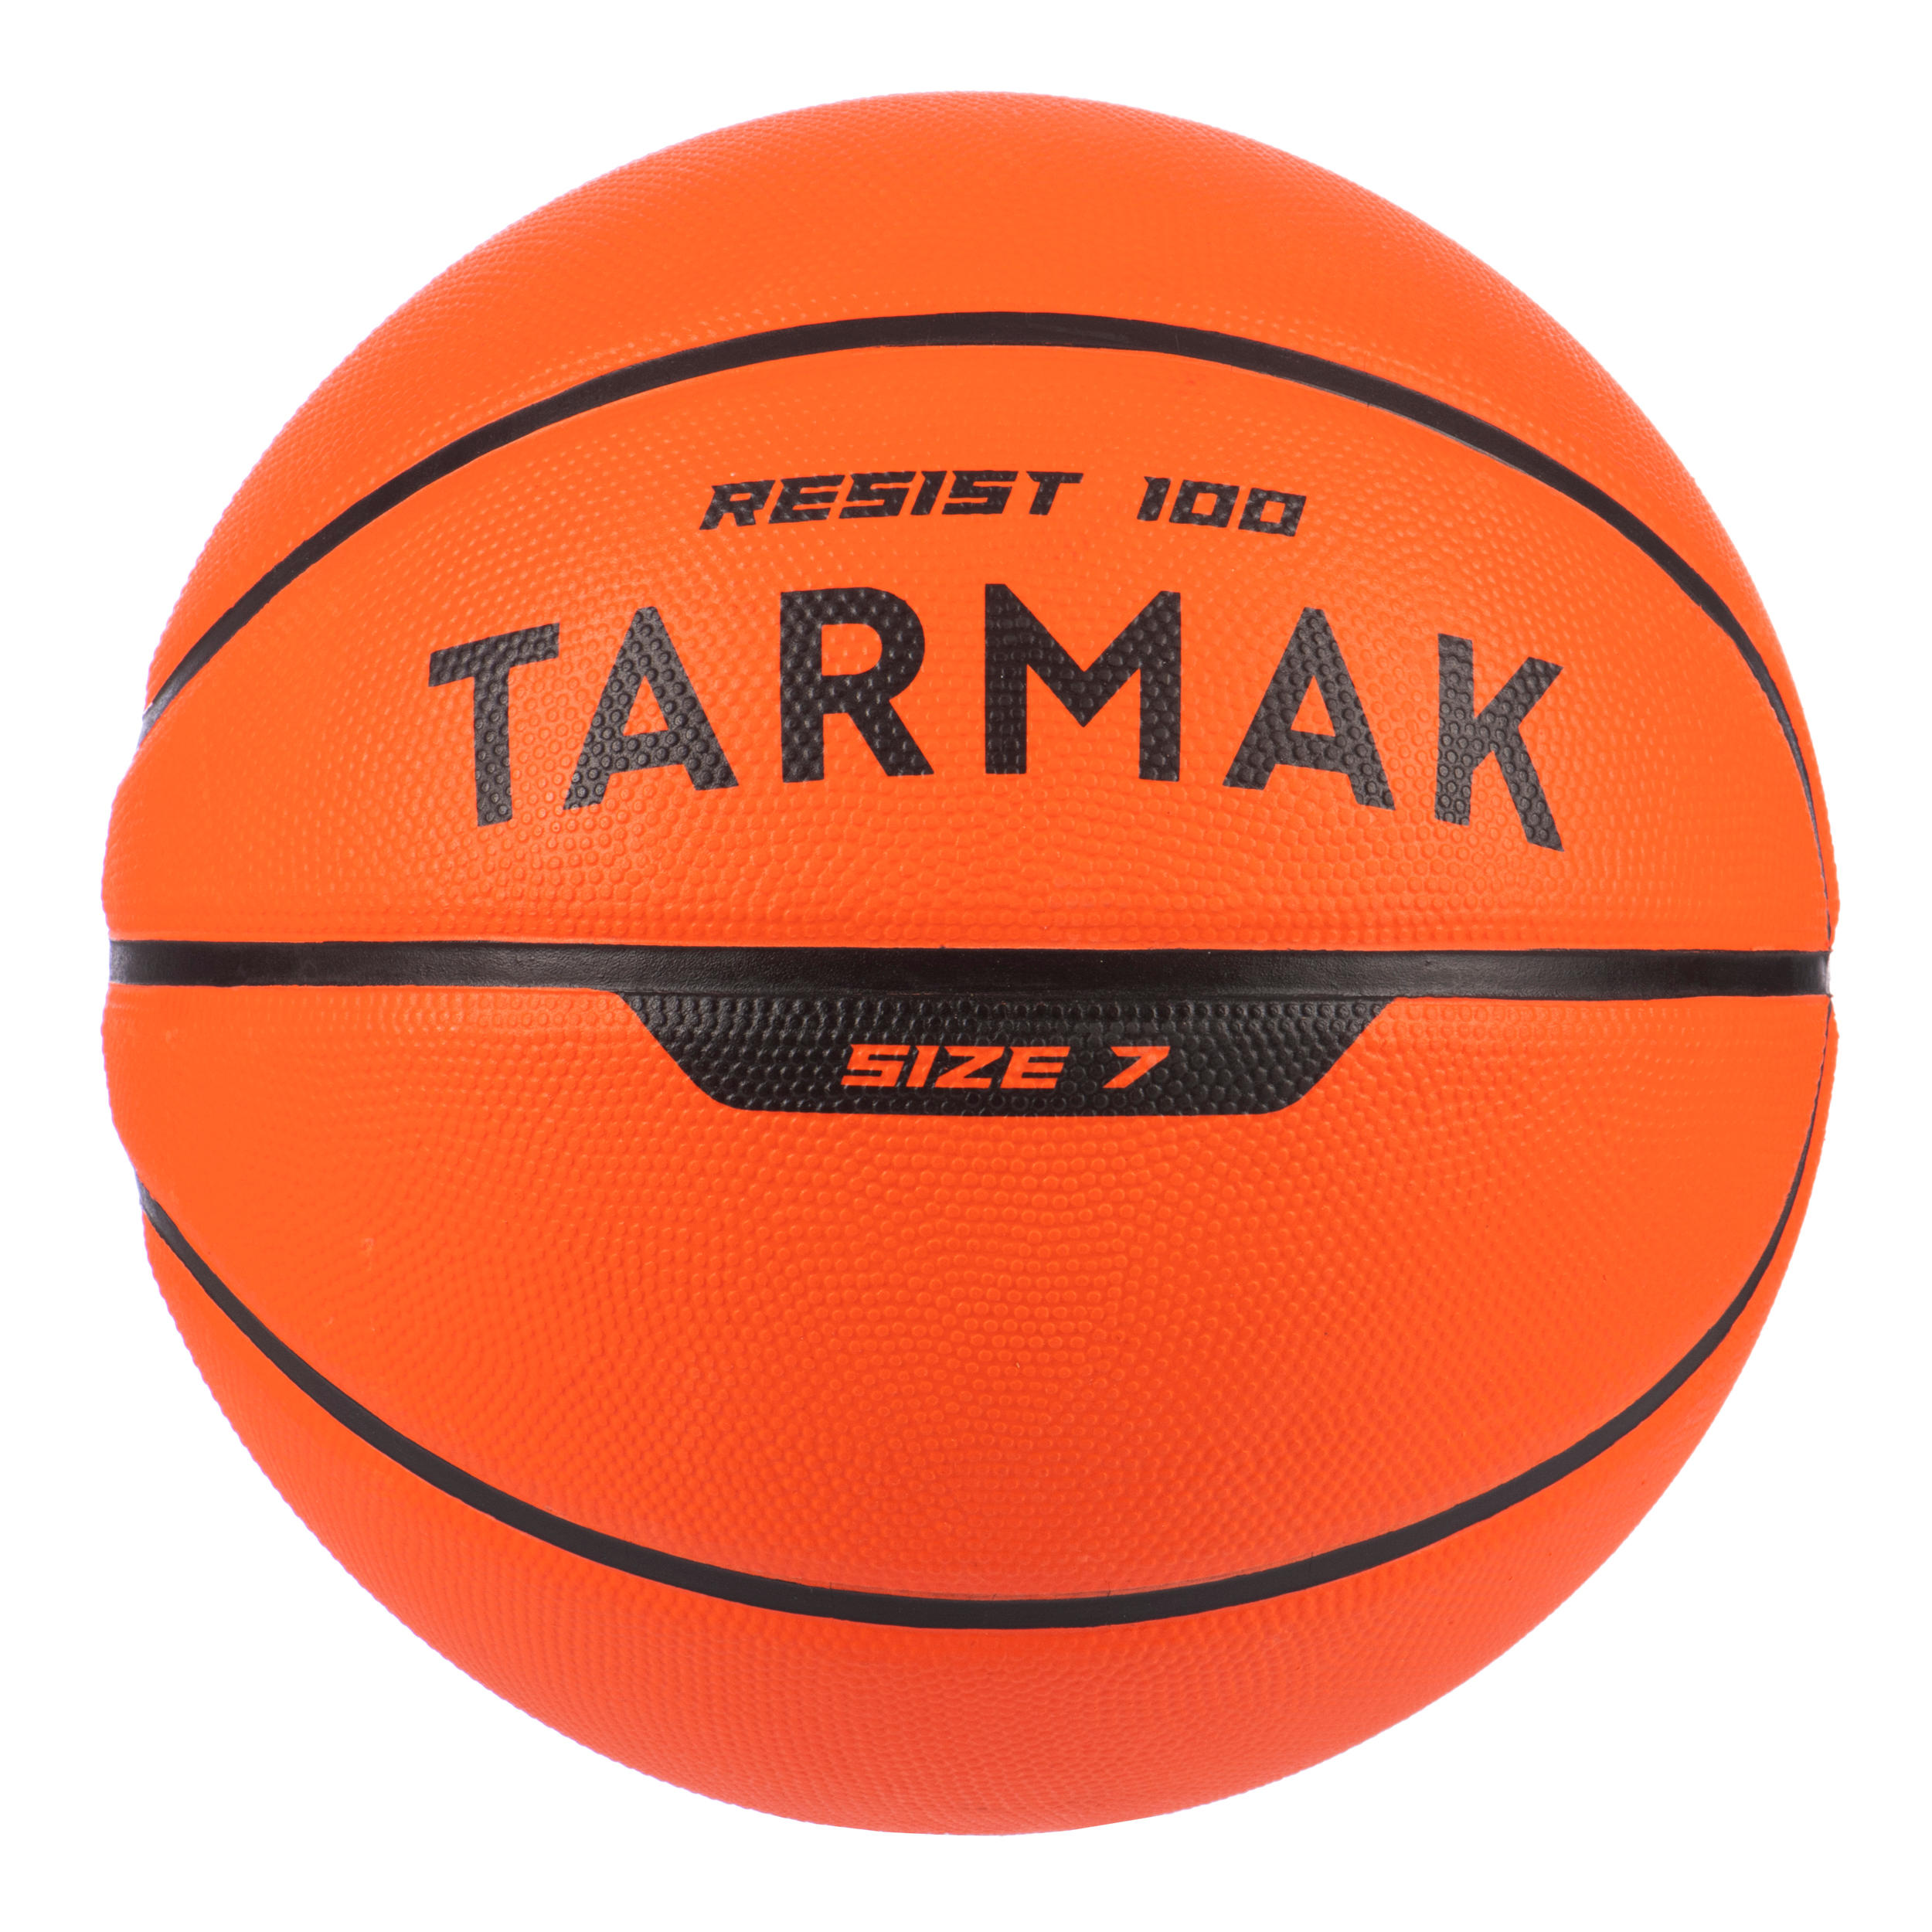 Basketboll R100 Stl 7 Junior/vuxen Orange.